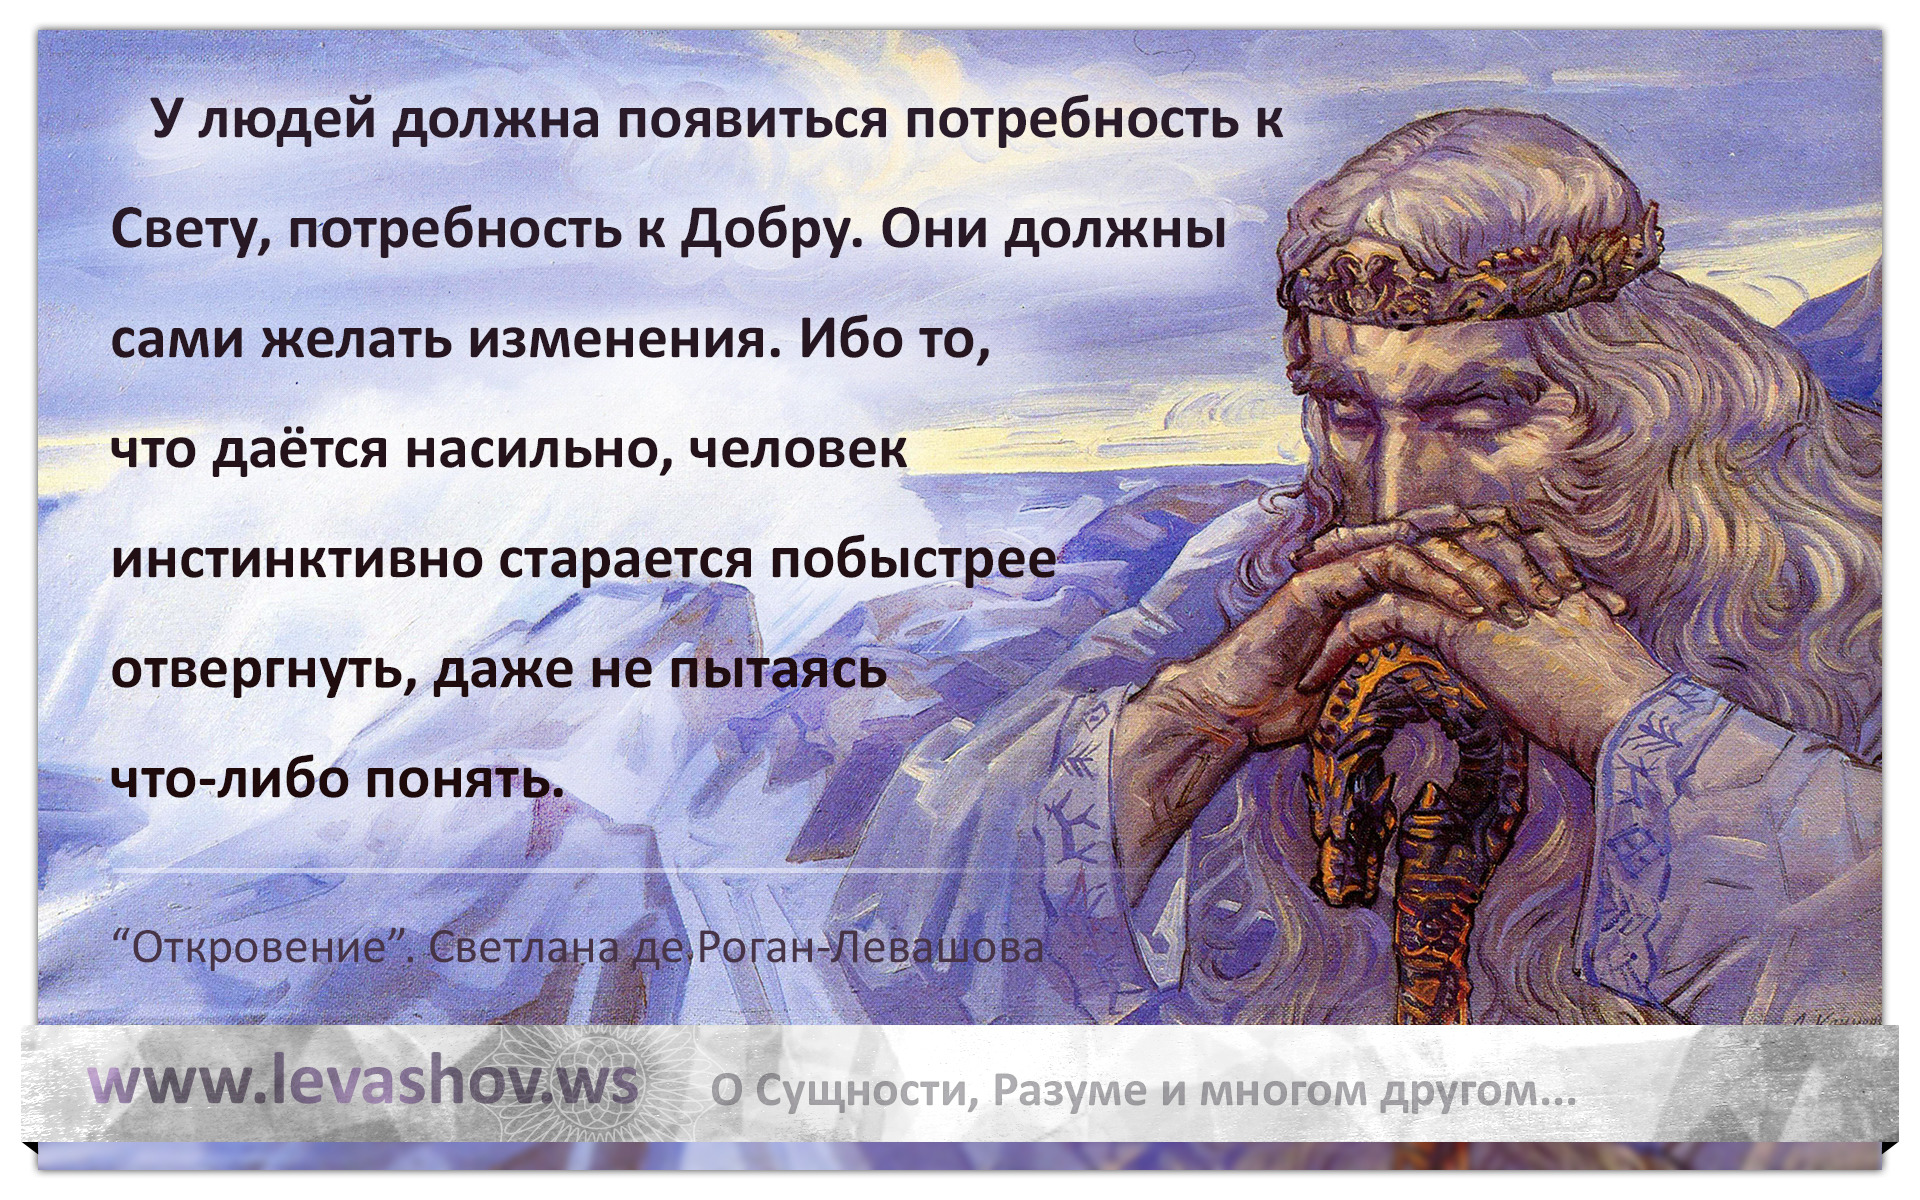 Мудрость предков славян